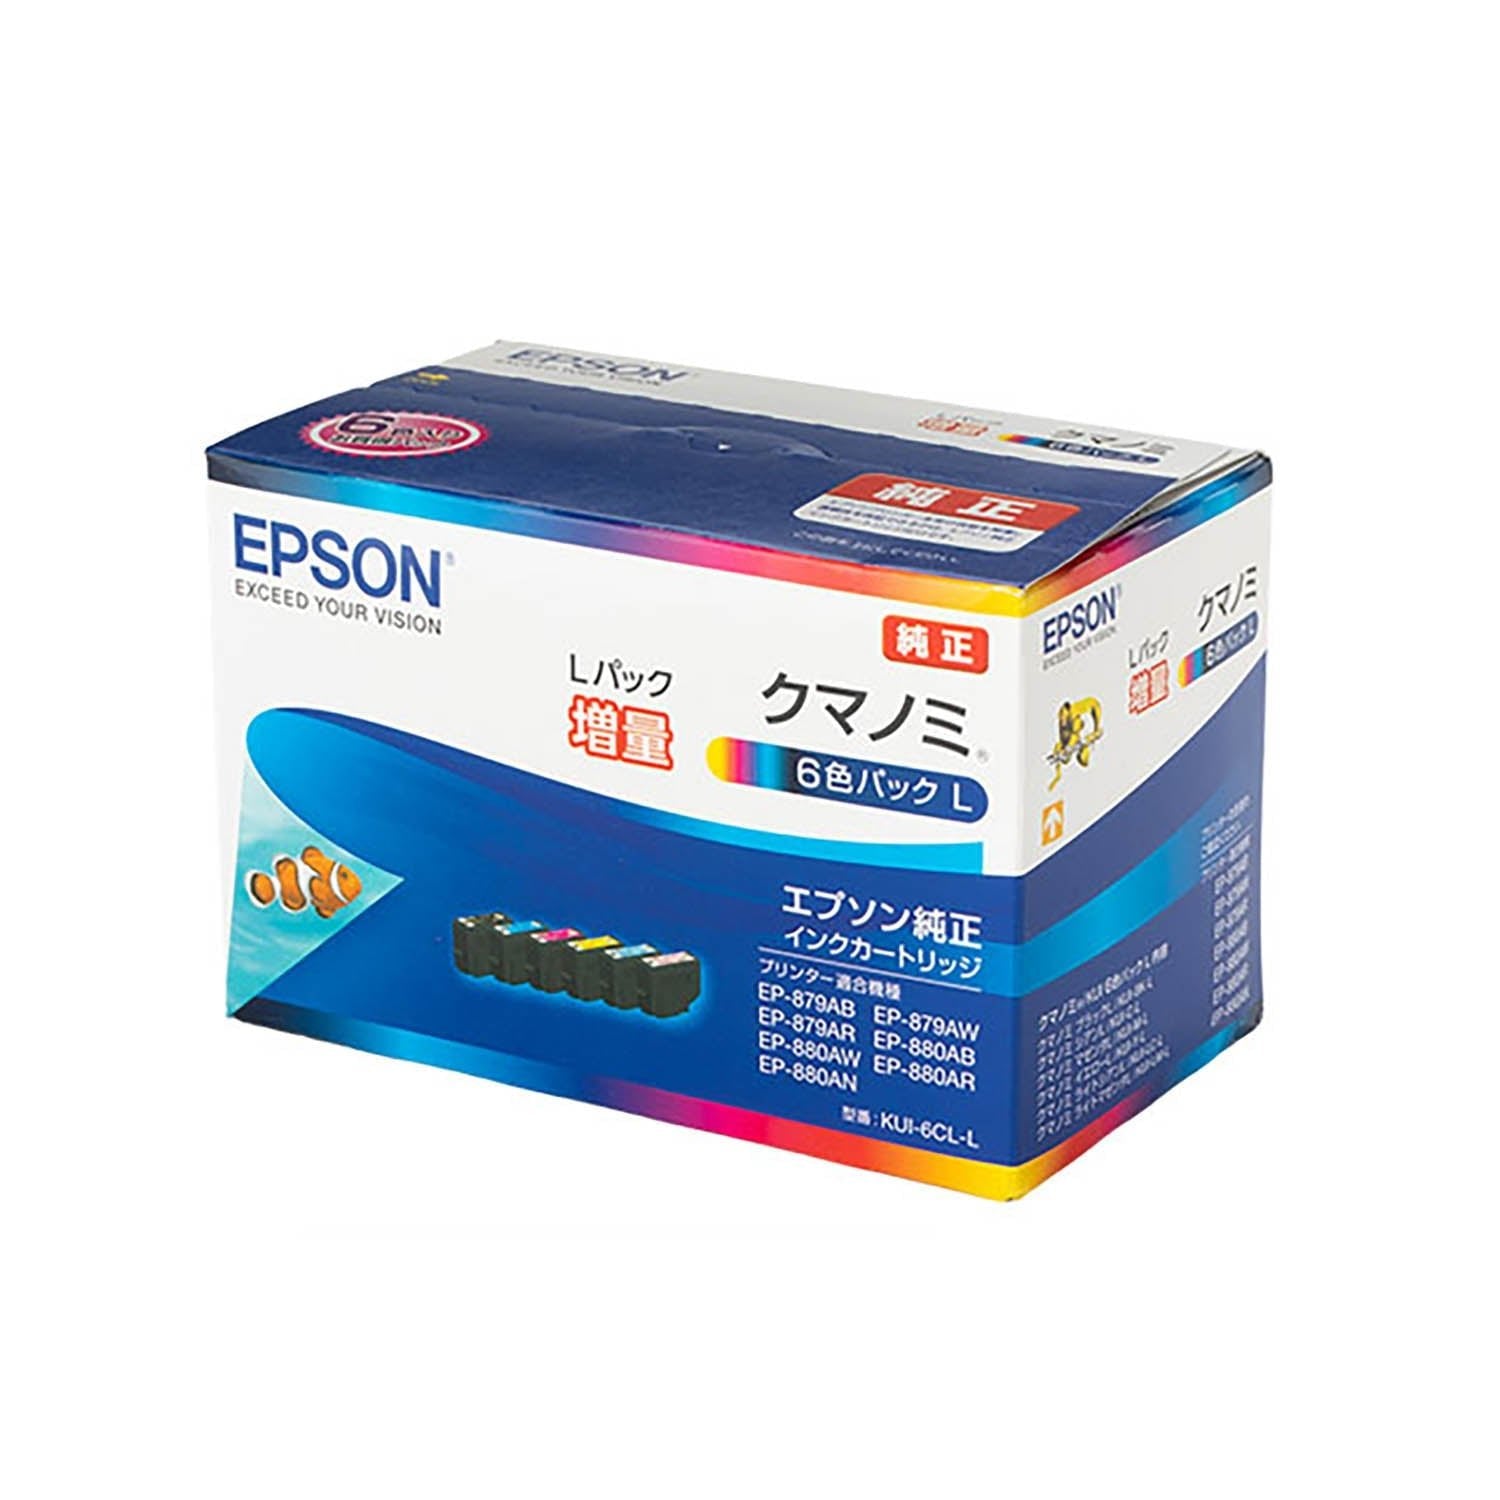 スマホ/家電/カメラ【純正】EPSON クマノミインク6色パックL KUI-6CL-L